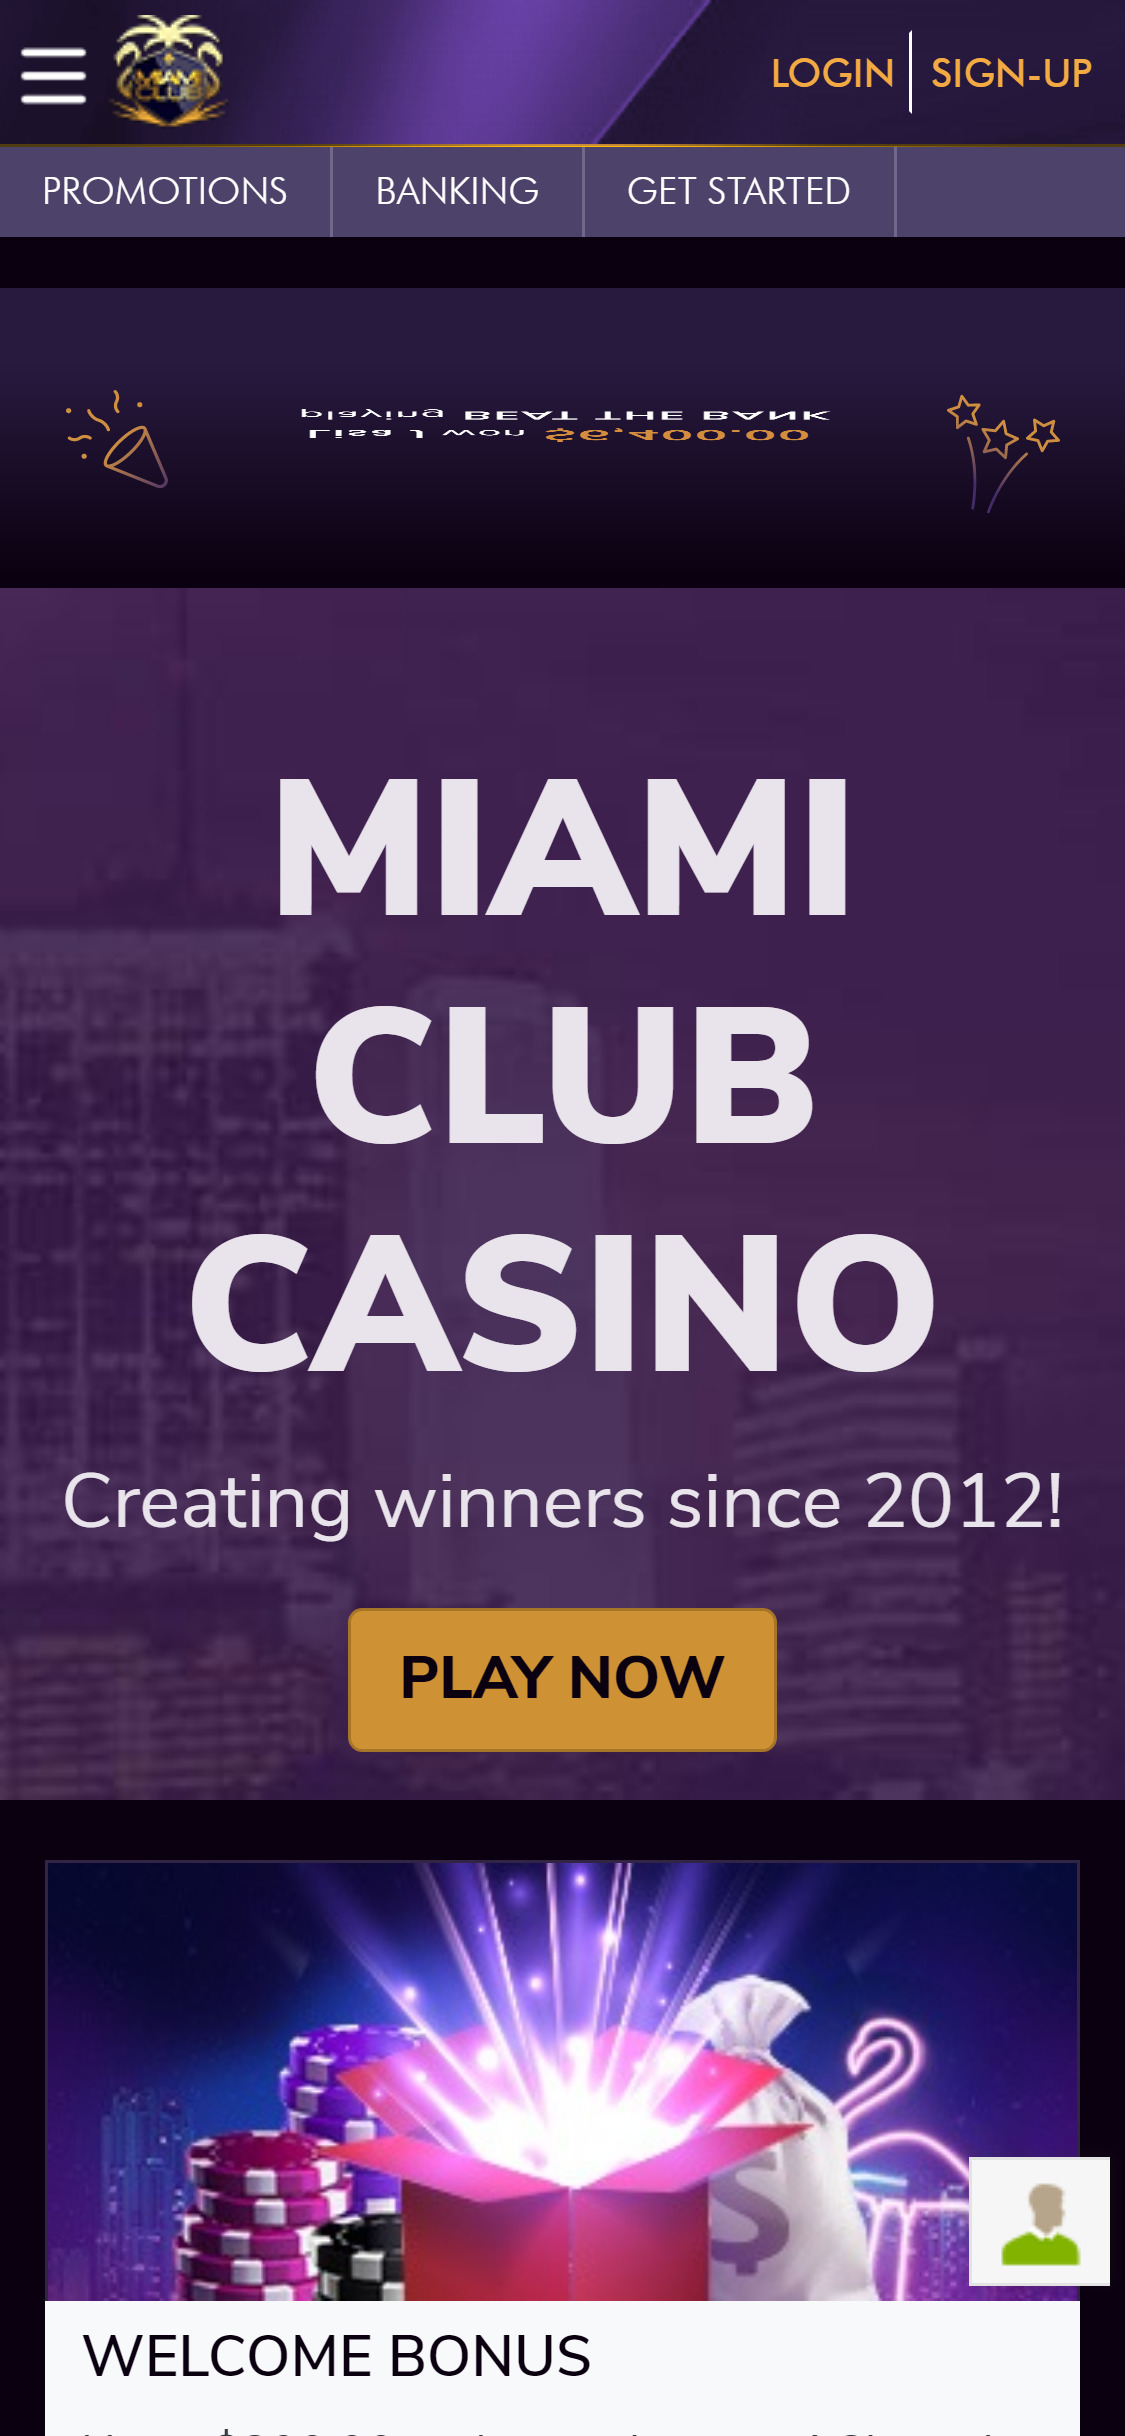 Miami Club Casino Mobile Review